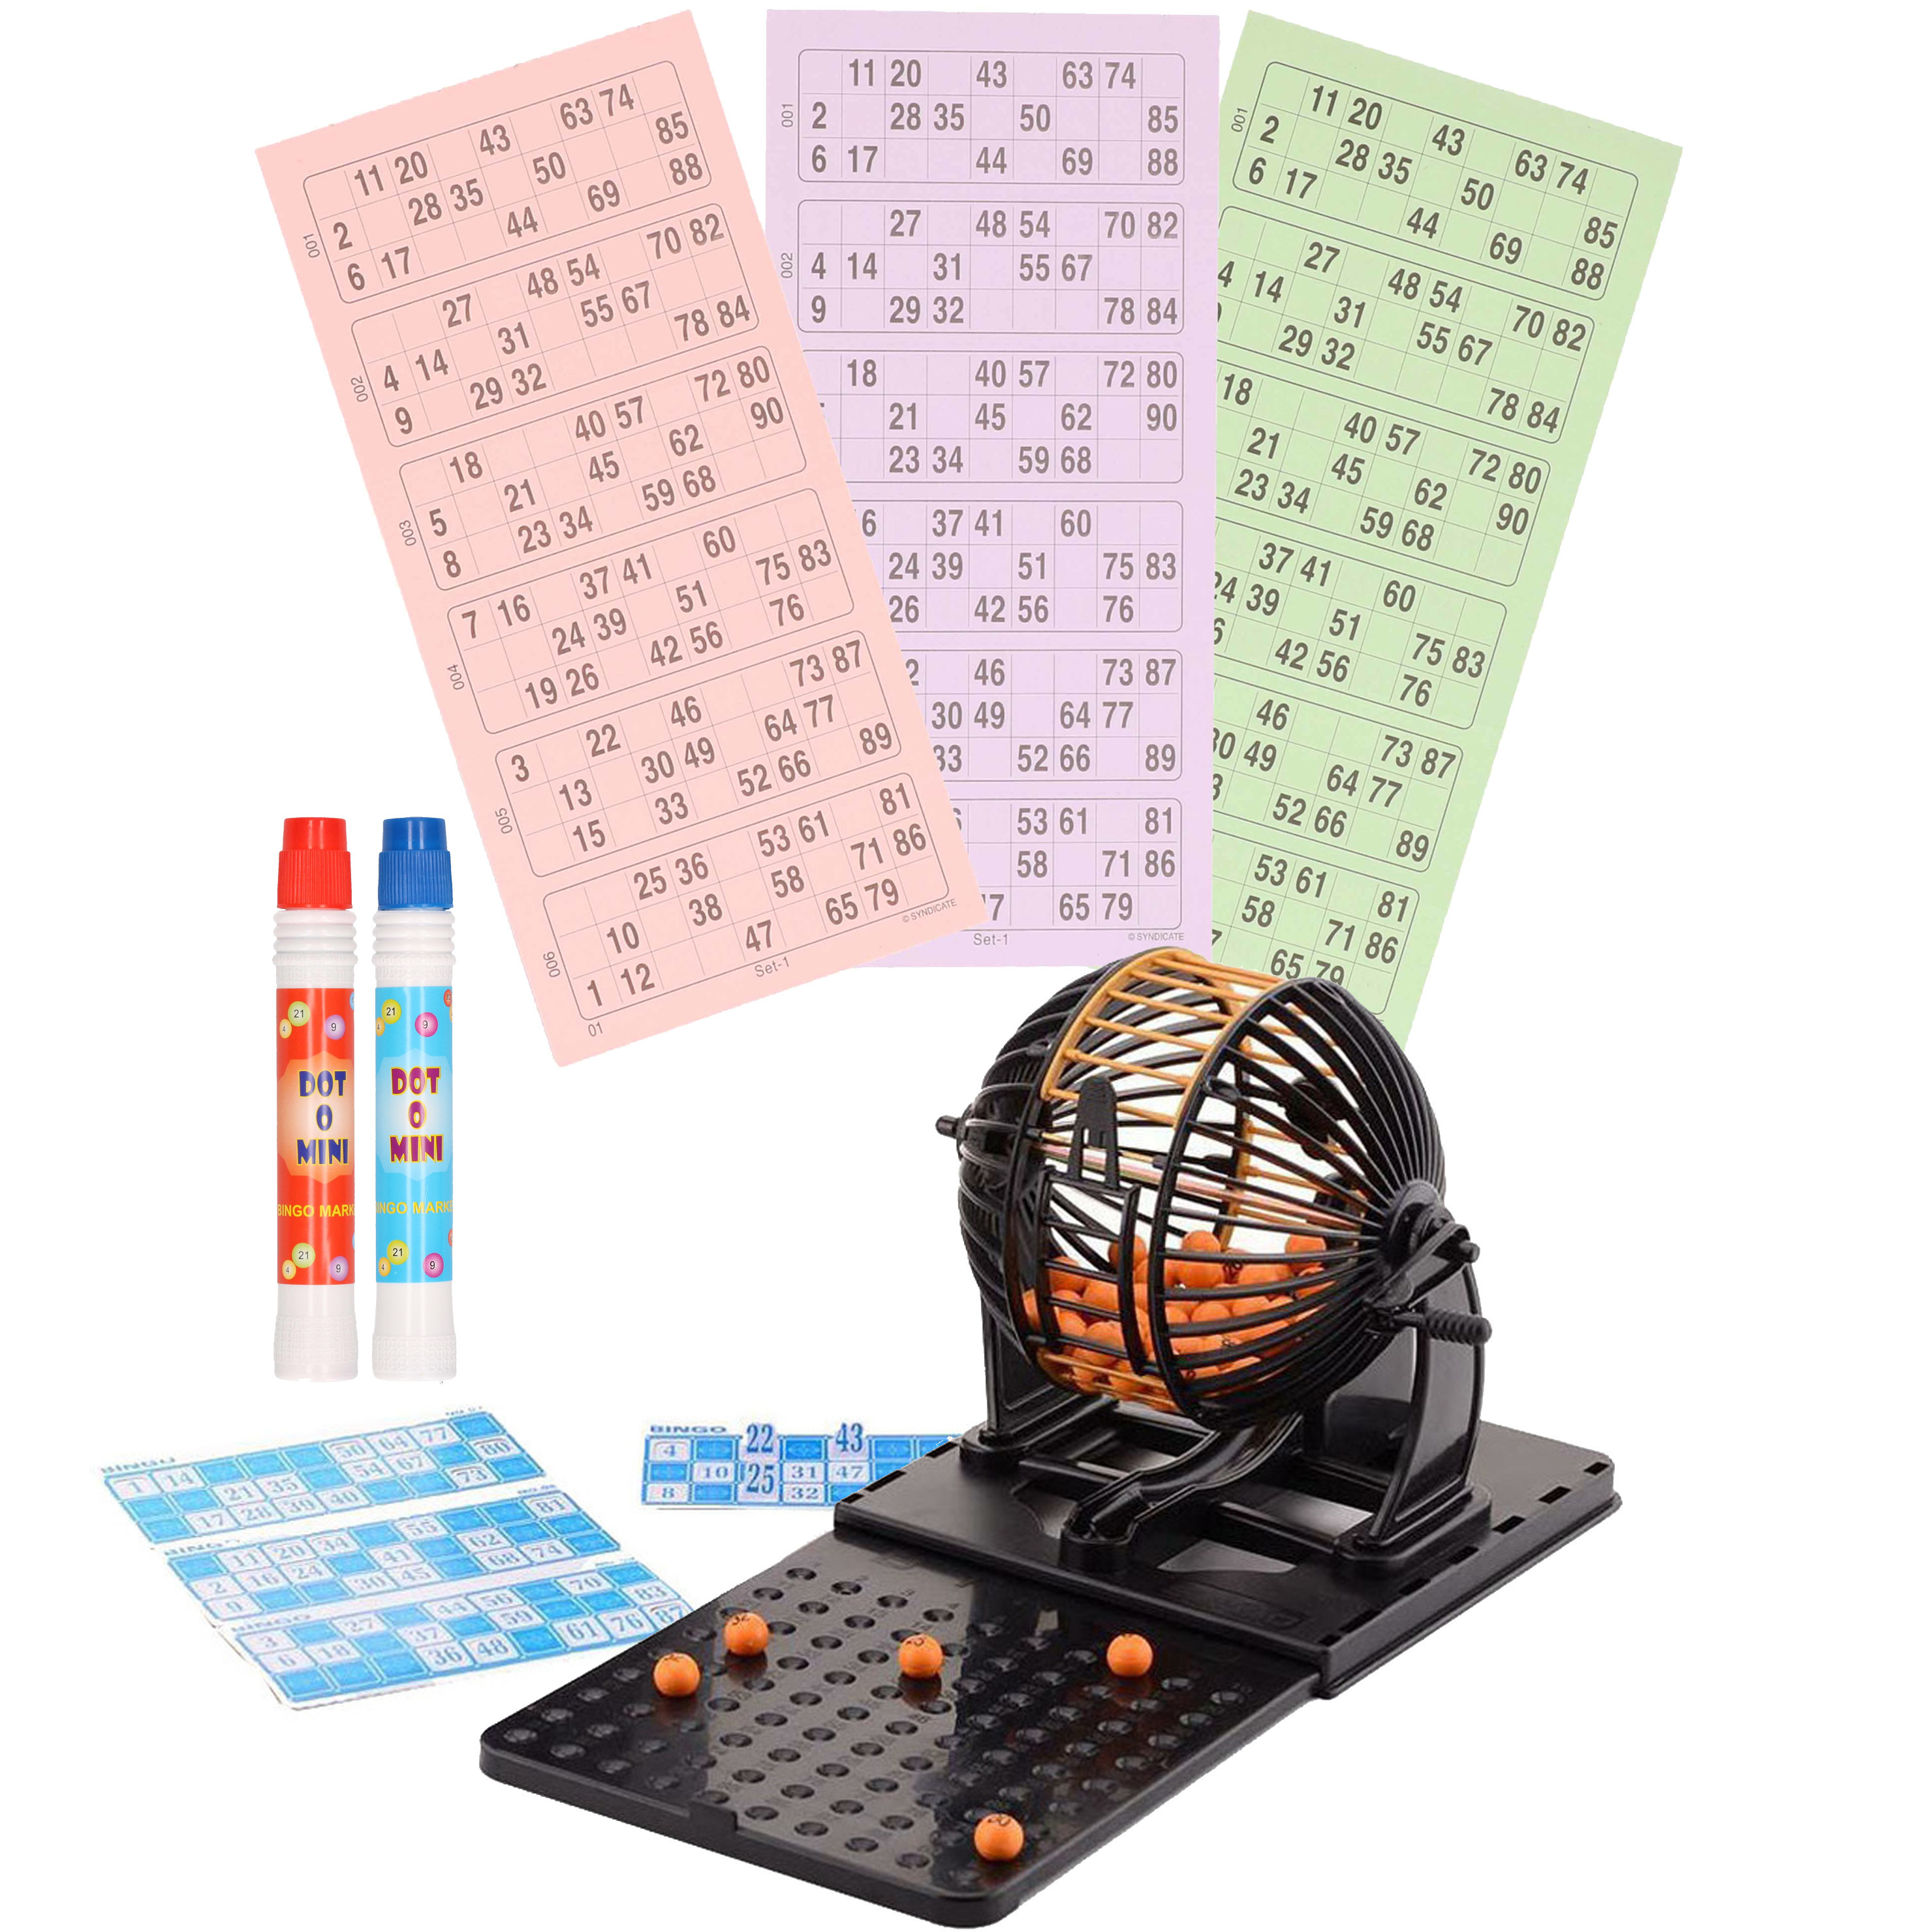 Bingospel zwart-oranje 1-90 met bingomolen, 148 bingokaarten en 2 bingostiften